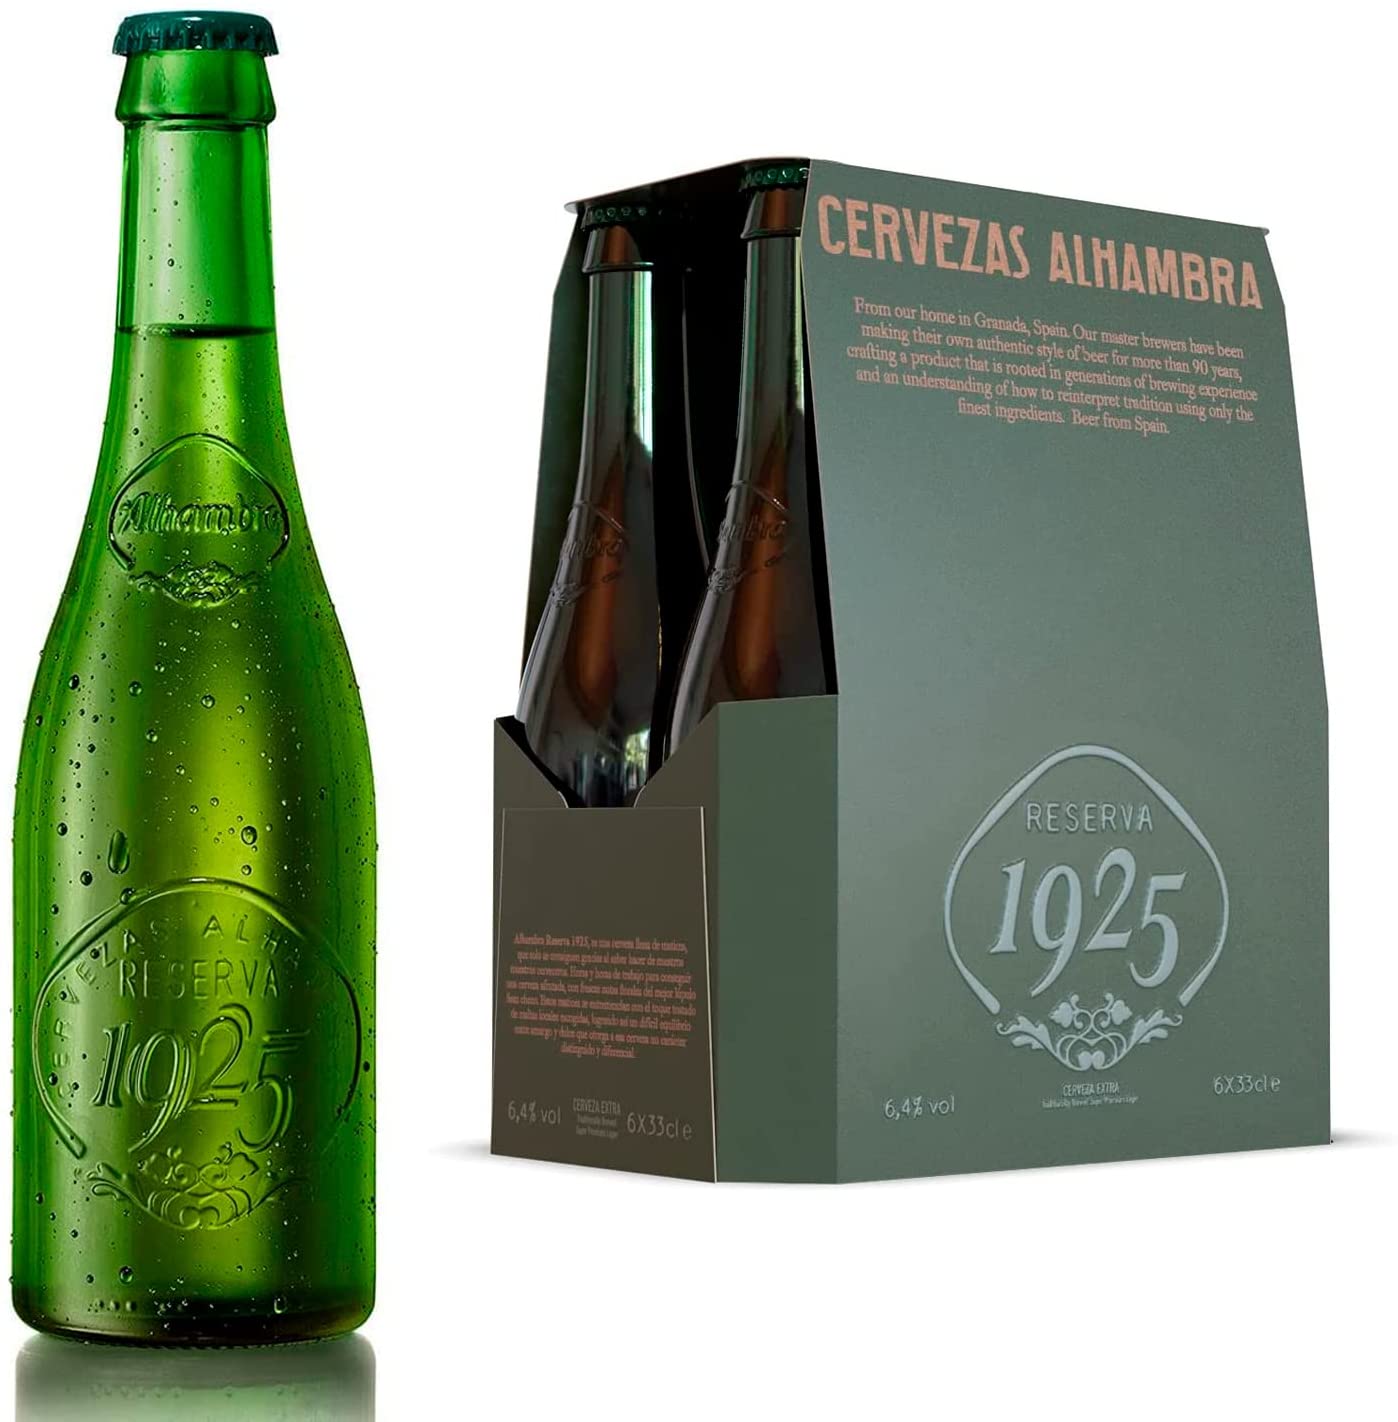 Alhambra Reserva 1925 0,33l- Das Bier aus Granada in Andalusien mit 6,4%Vol.